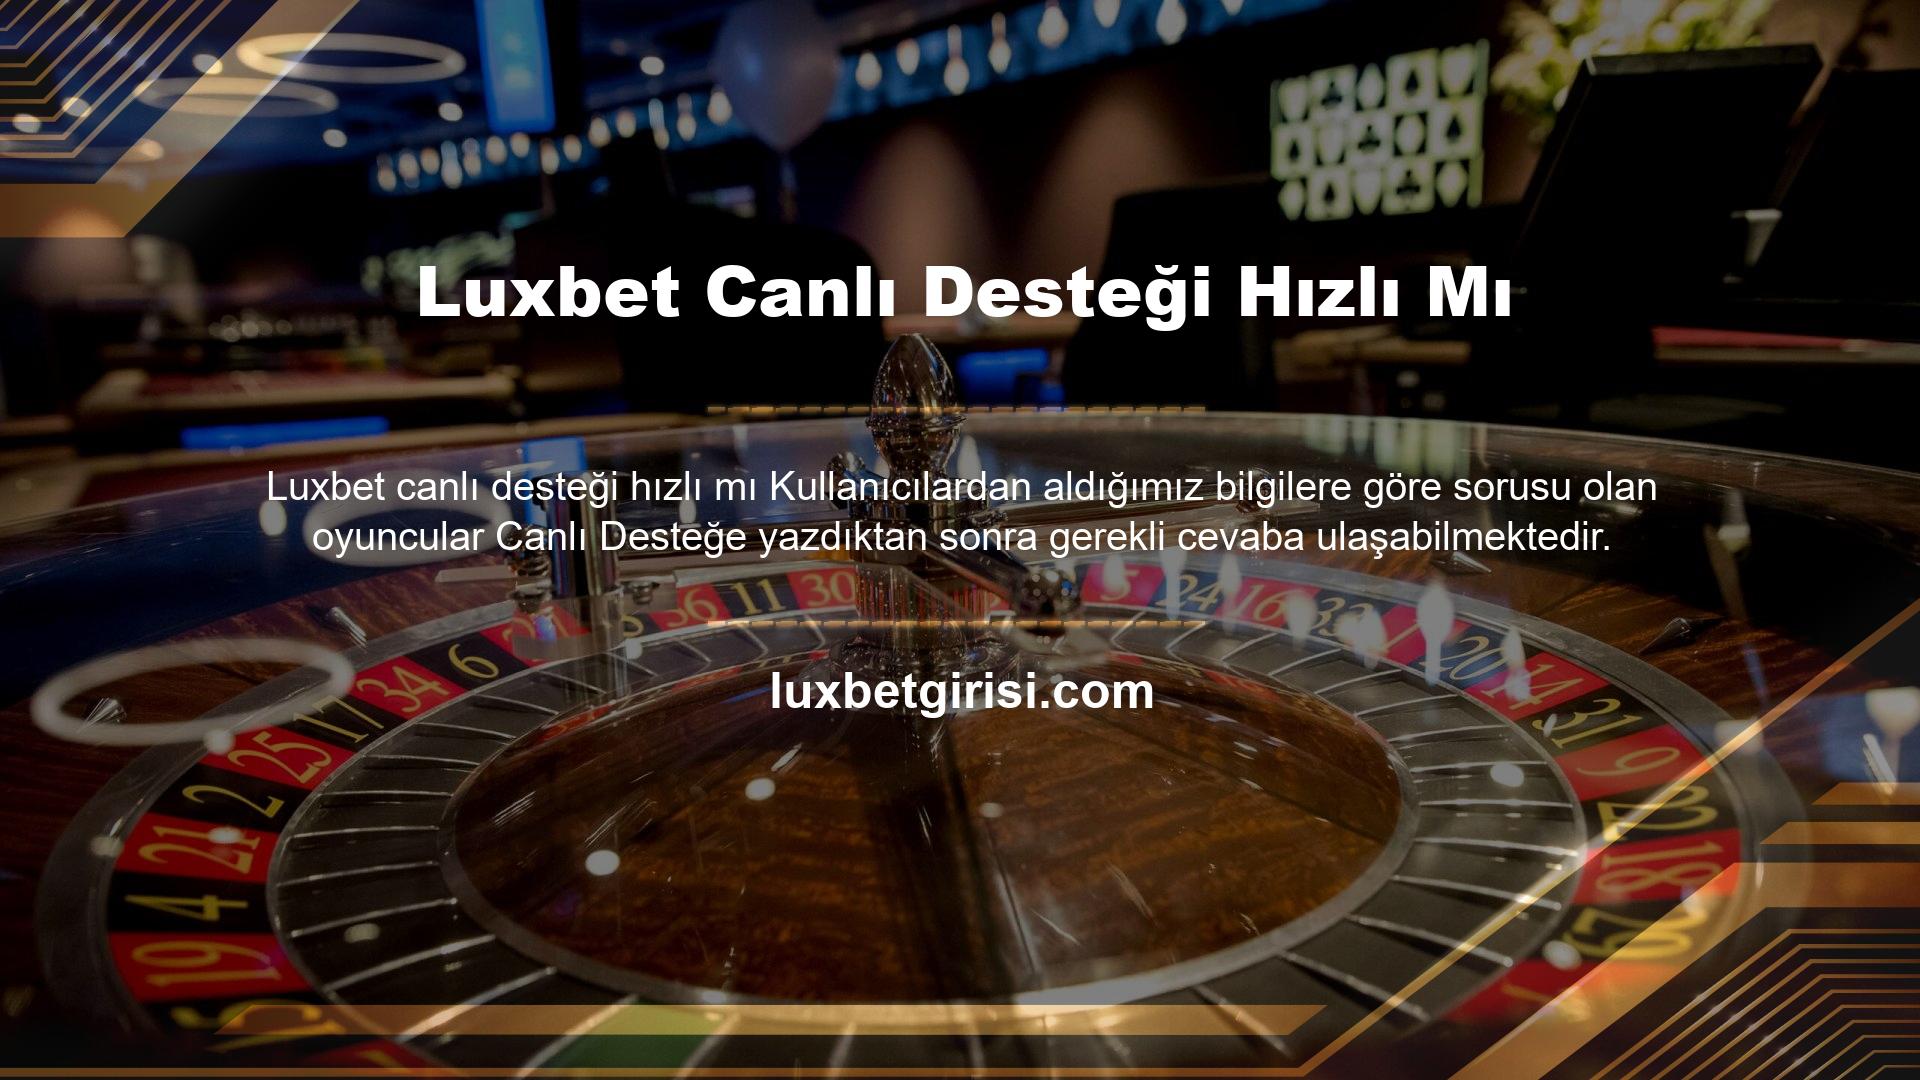 Bu kadar hızlı bir web sitesi her müşterinin hayali olduğundan, Luxbet son zamanlarda oyuncu sayısını önemli ölçüde artırdı